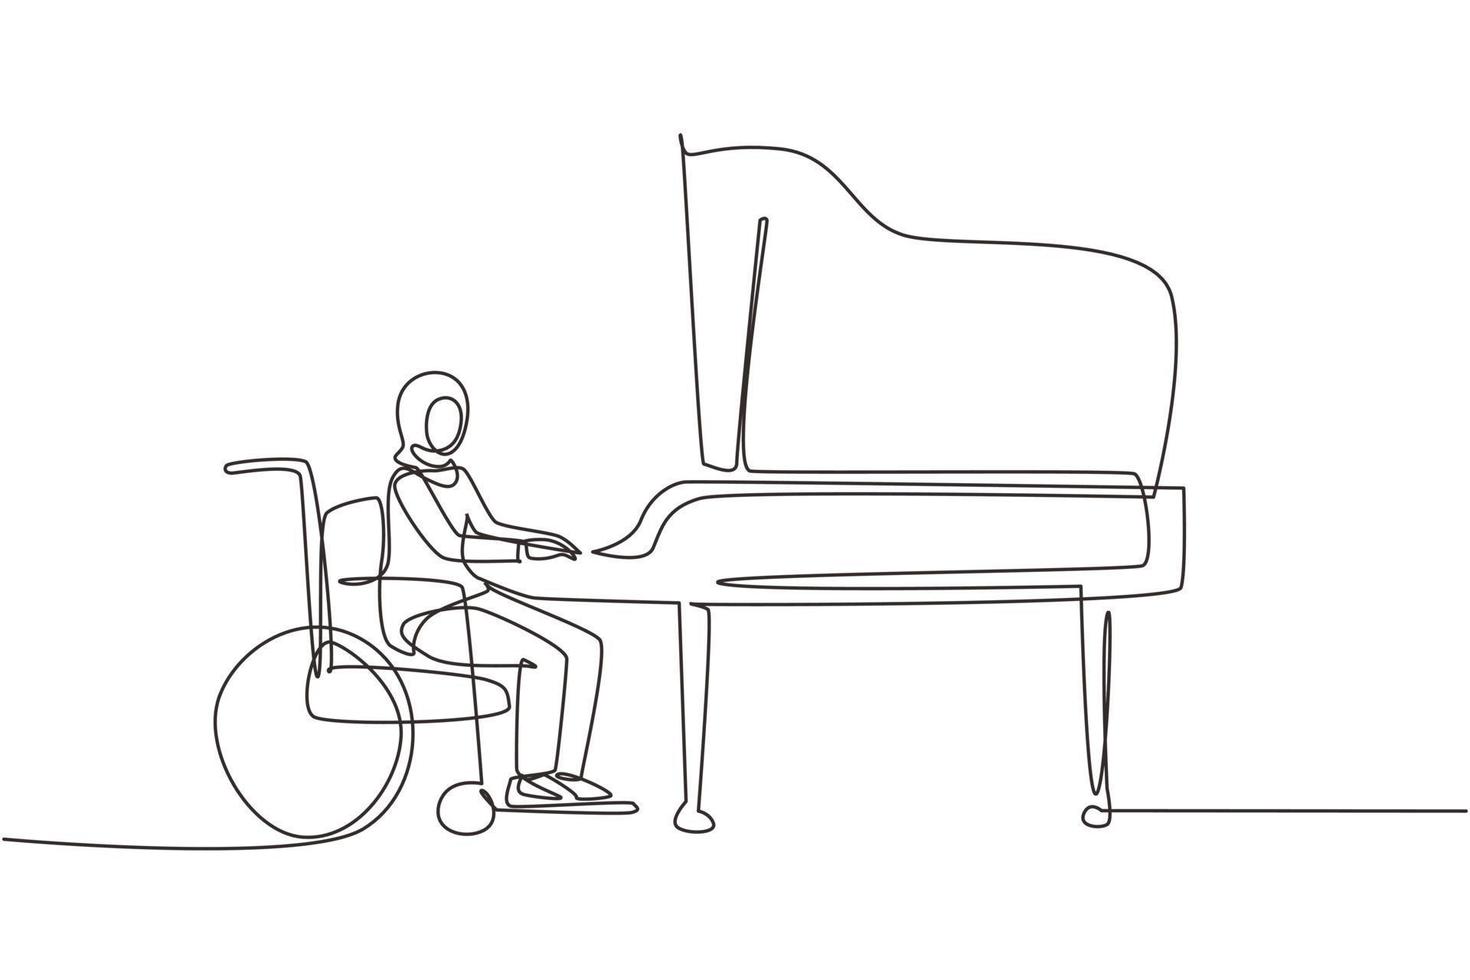 dibujo continuo de una línea discapacitada joven árabe en silla de ruedas tocando piano en concierto. discapacidad y música clásica. Físicamente desarmado. ilustración gráfica de vector de diseño de dibujo de una sola línea